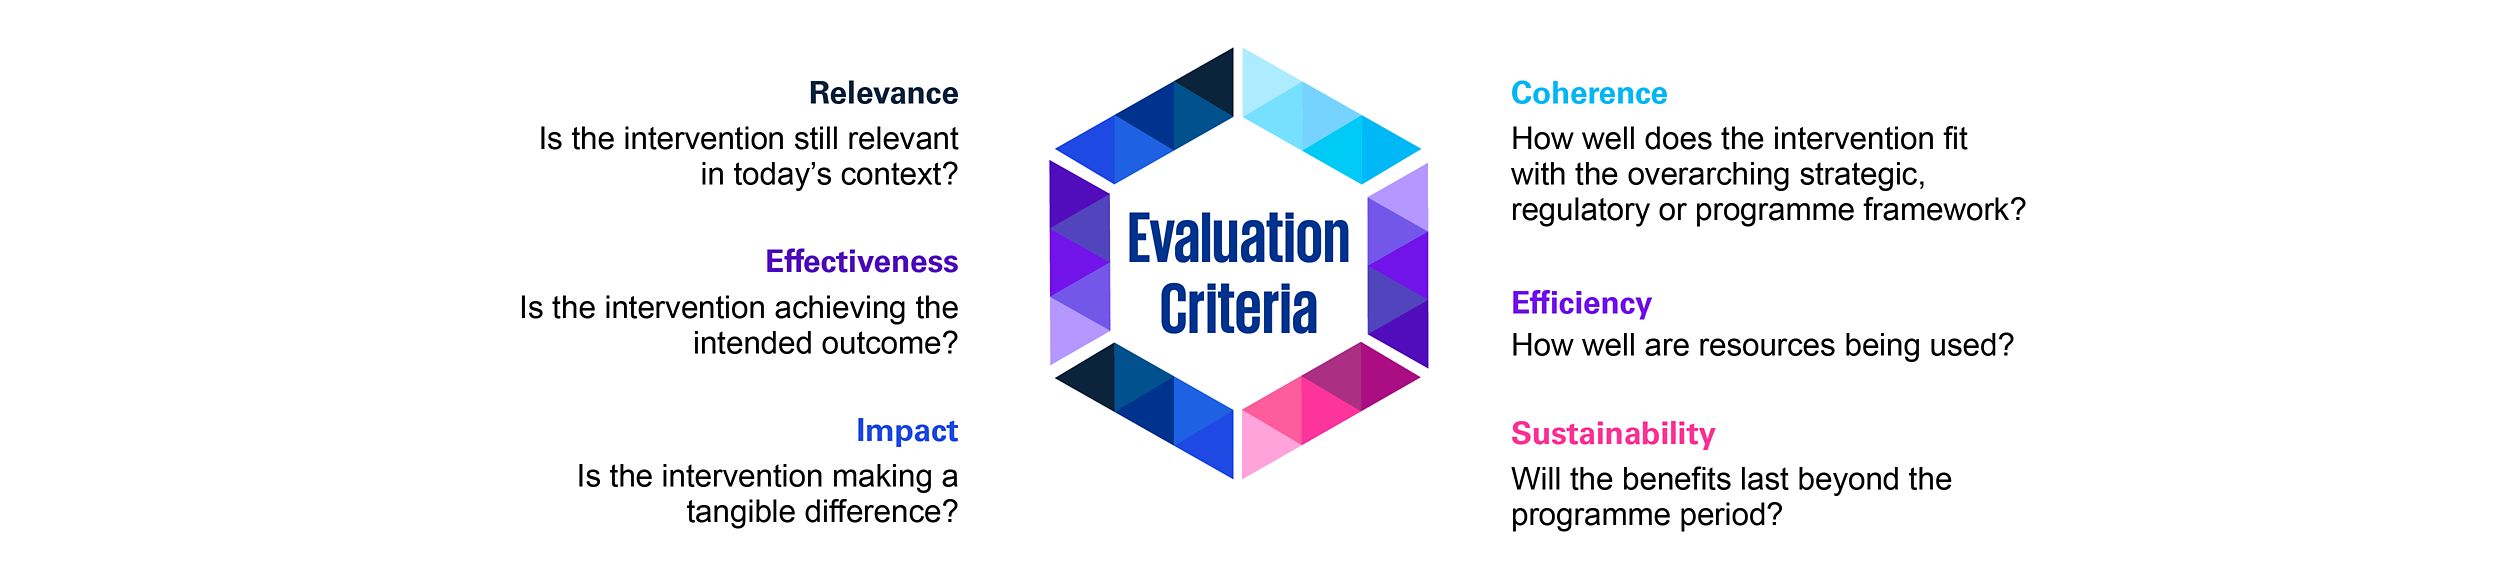 Evaluation criteria 